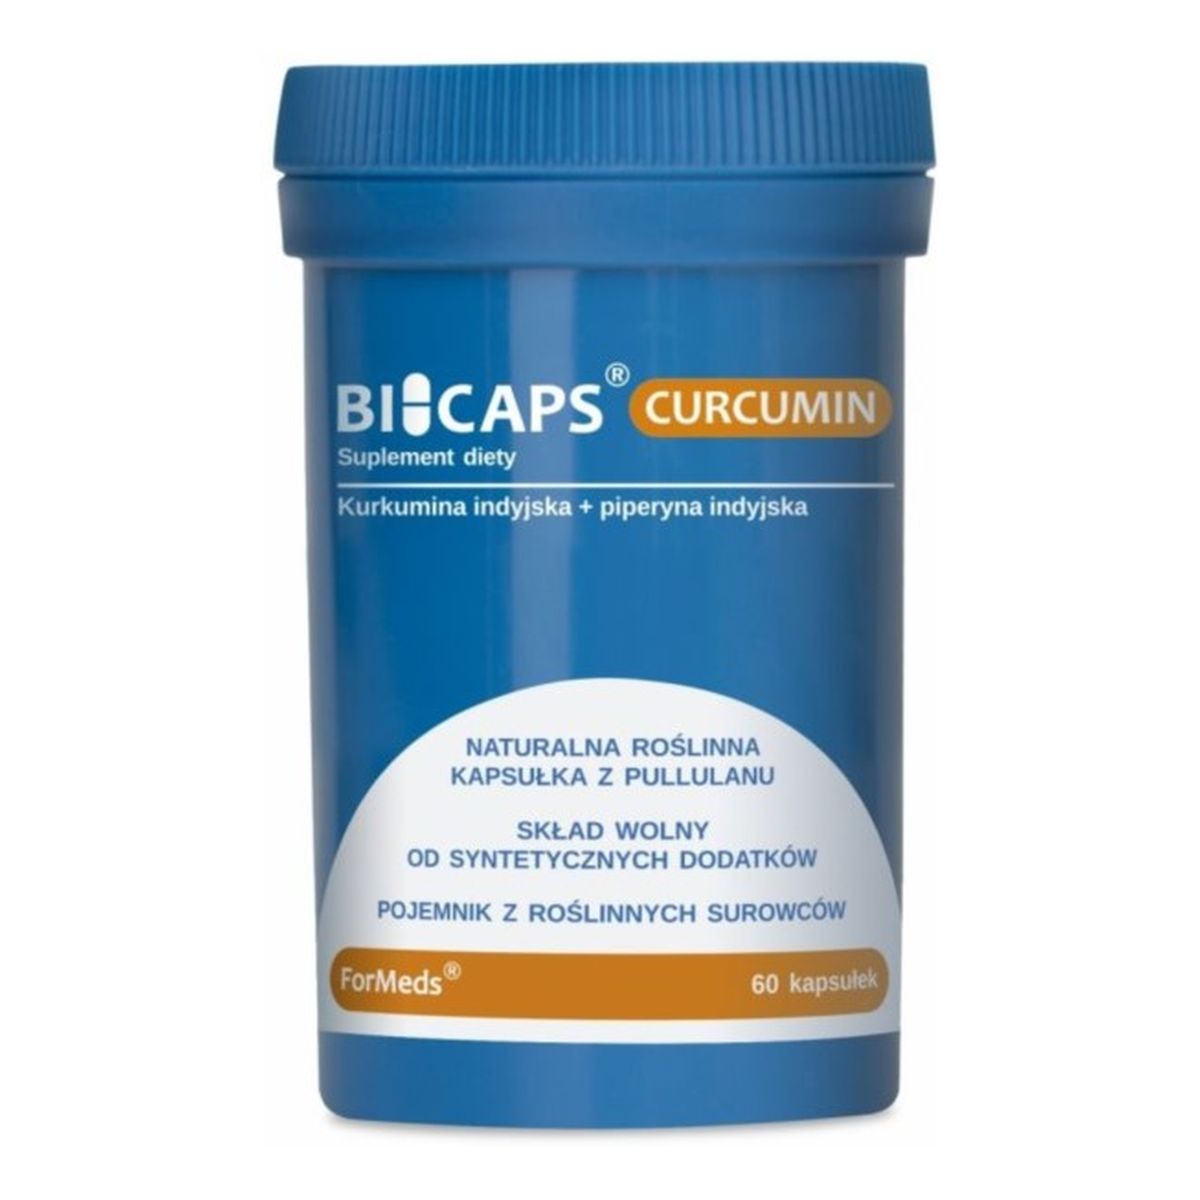 Formeds Bicaps Curcumin suplement diety 60 Kapsułek